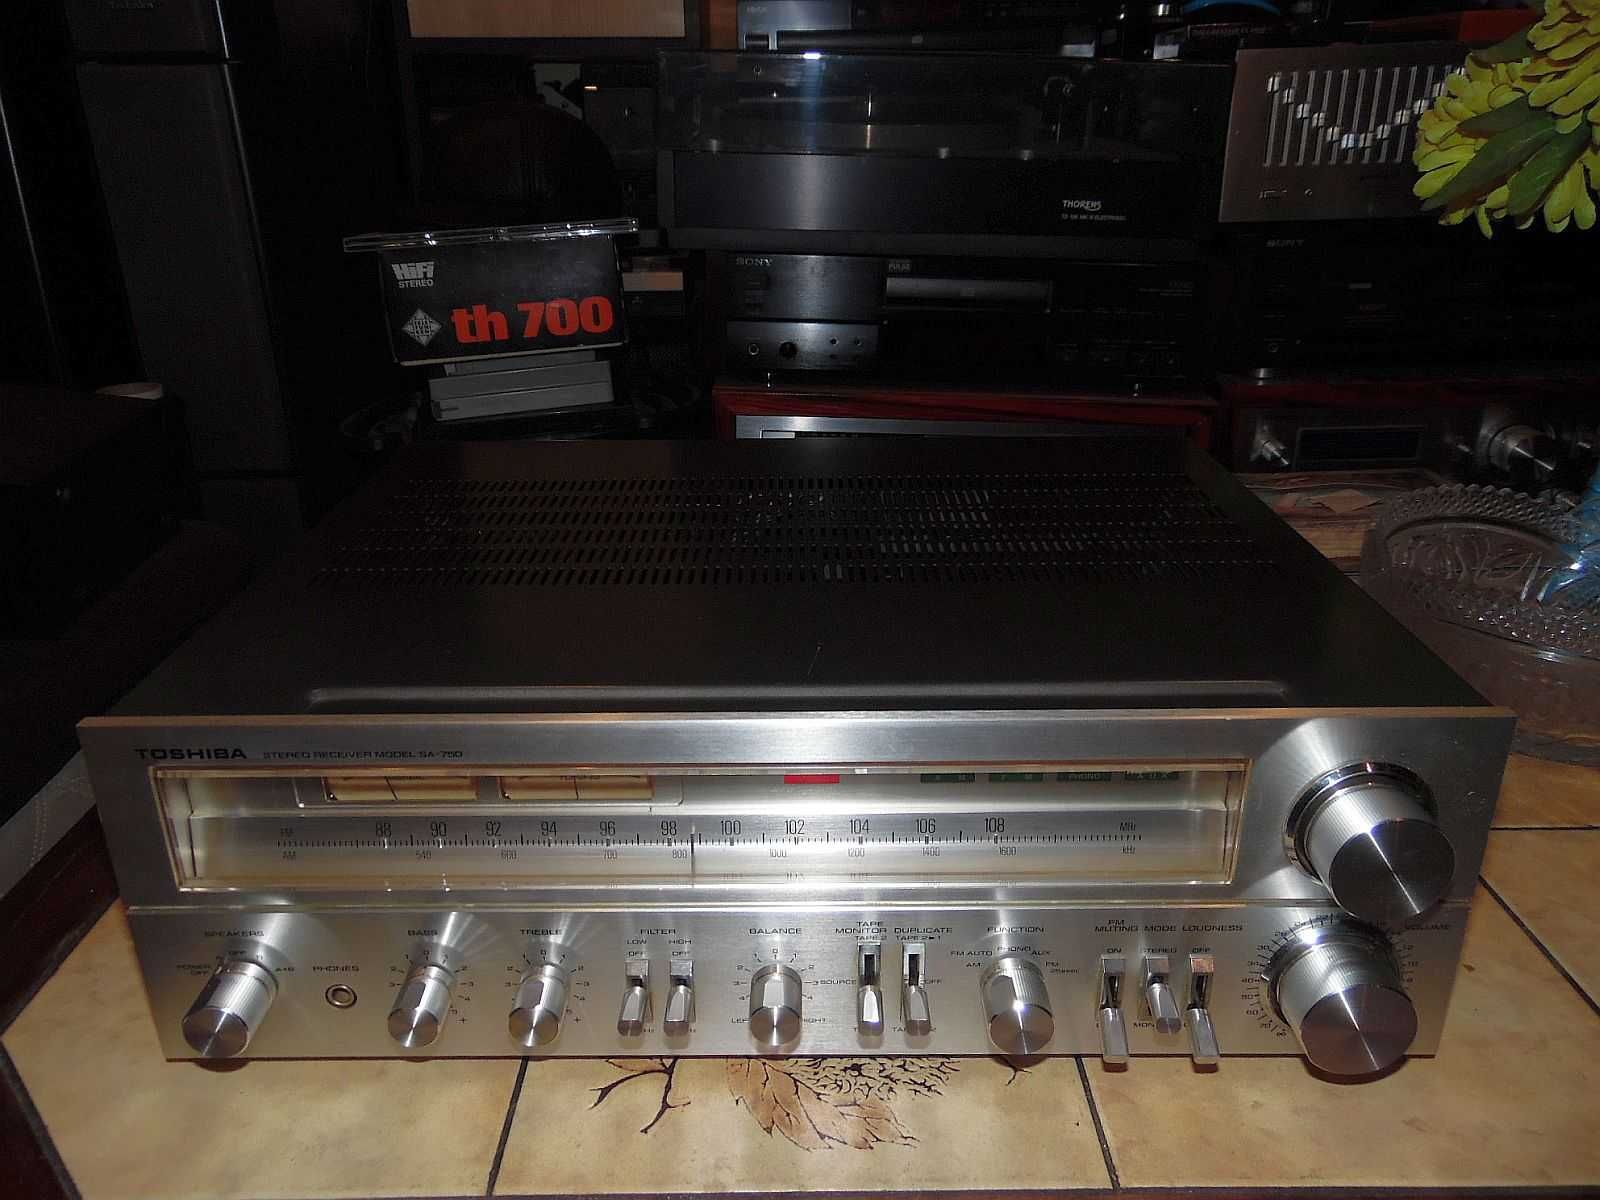 Wzmacniacz ampli stereo Toshiba SA-750 (Pioneer SX-750 bliźniak) 2x50W